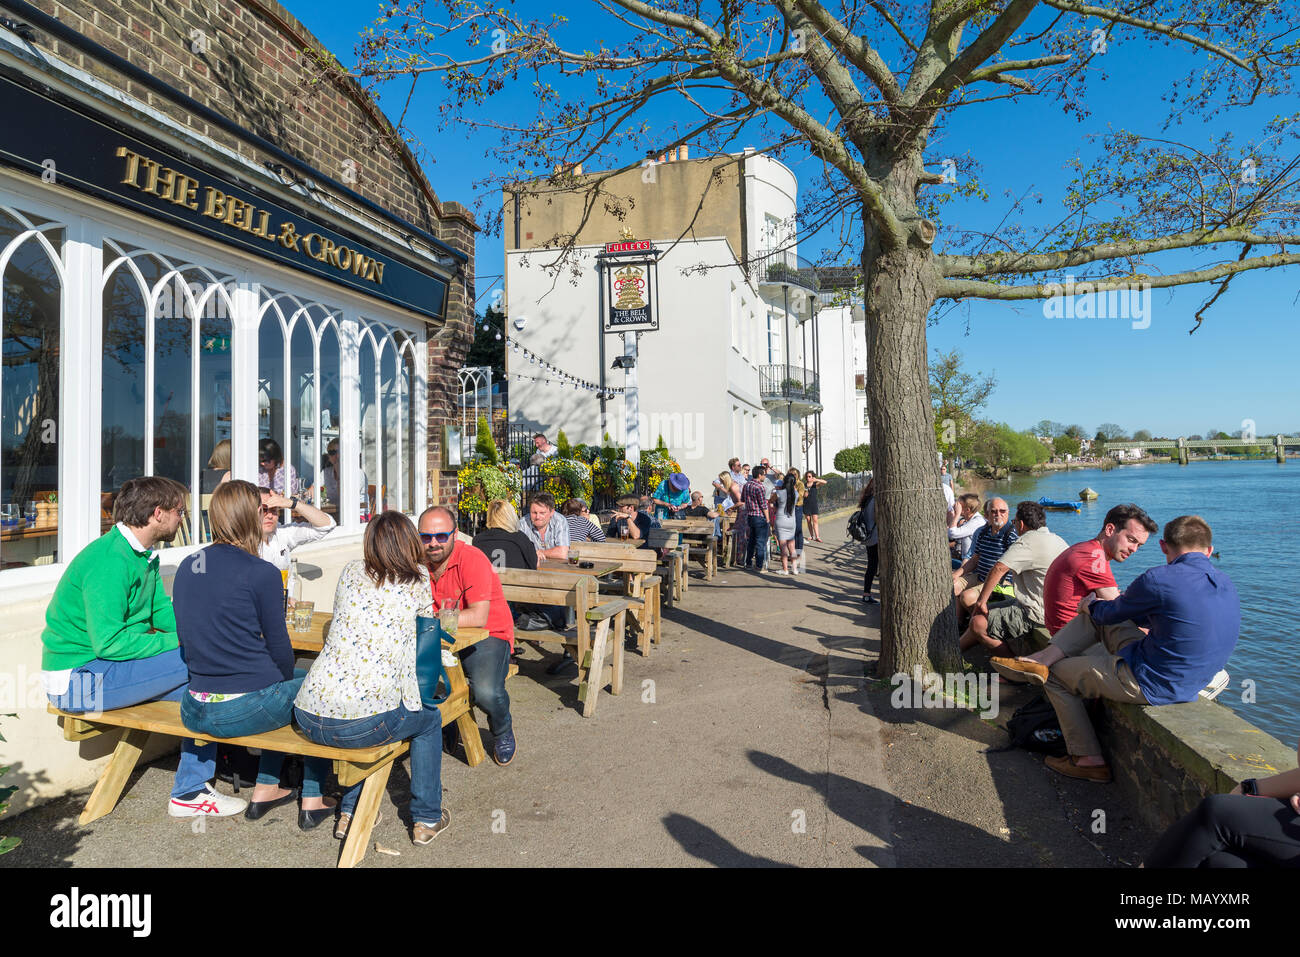 La campana e corona Thames riverside pub, Strand-su-il-verde, Chiswick, London, Regno Unito Foto Stock